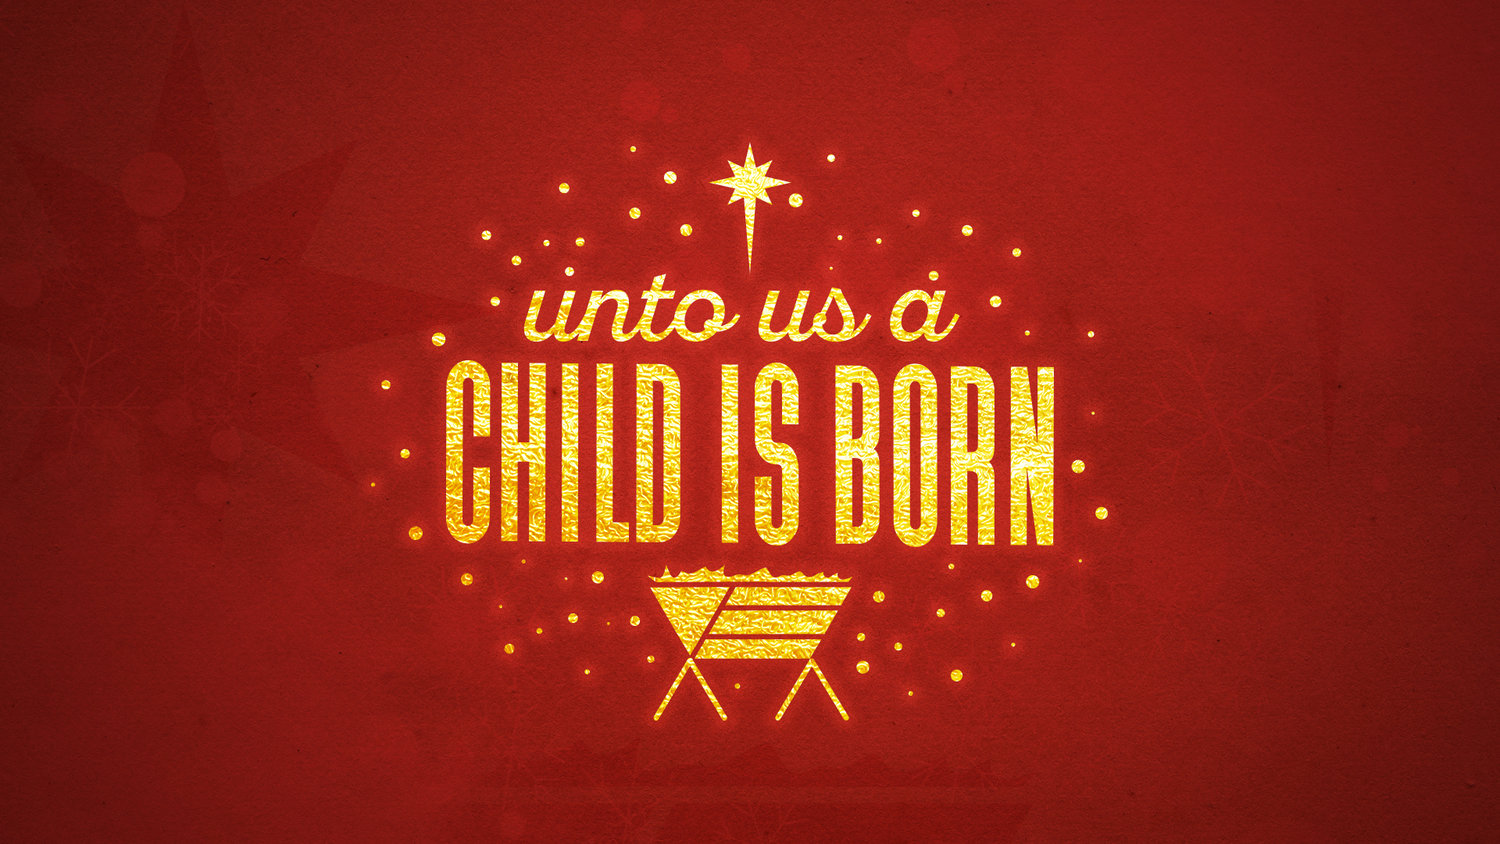 Unto Us a Child is Born – Love